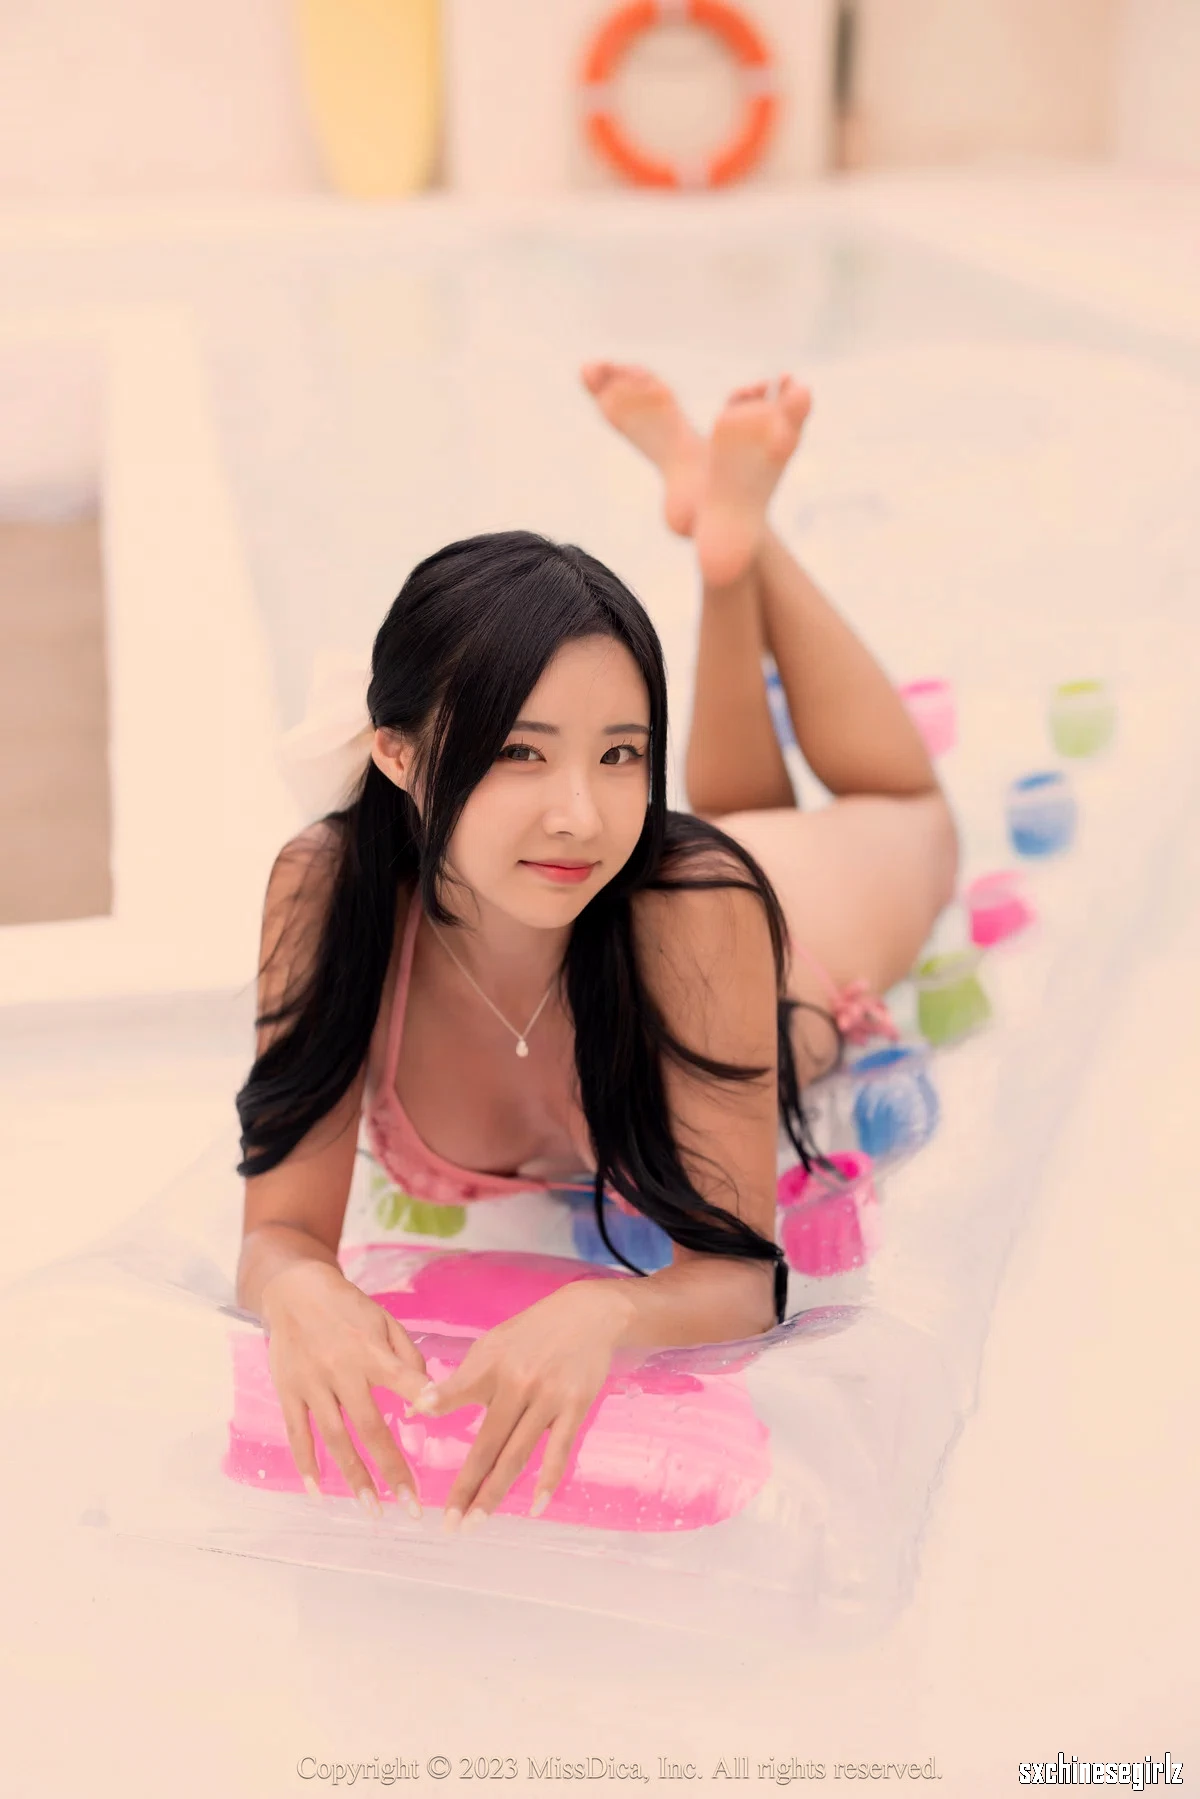 韩国美女模特Habin - Habin’s Rooftop Poolside Fantasy主题秀完美身材